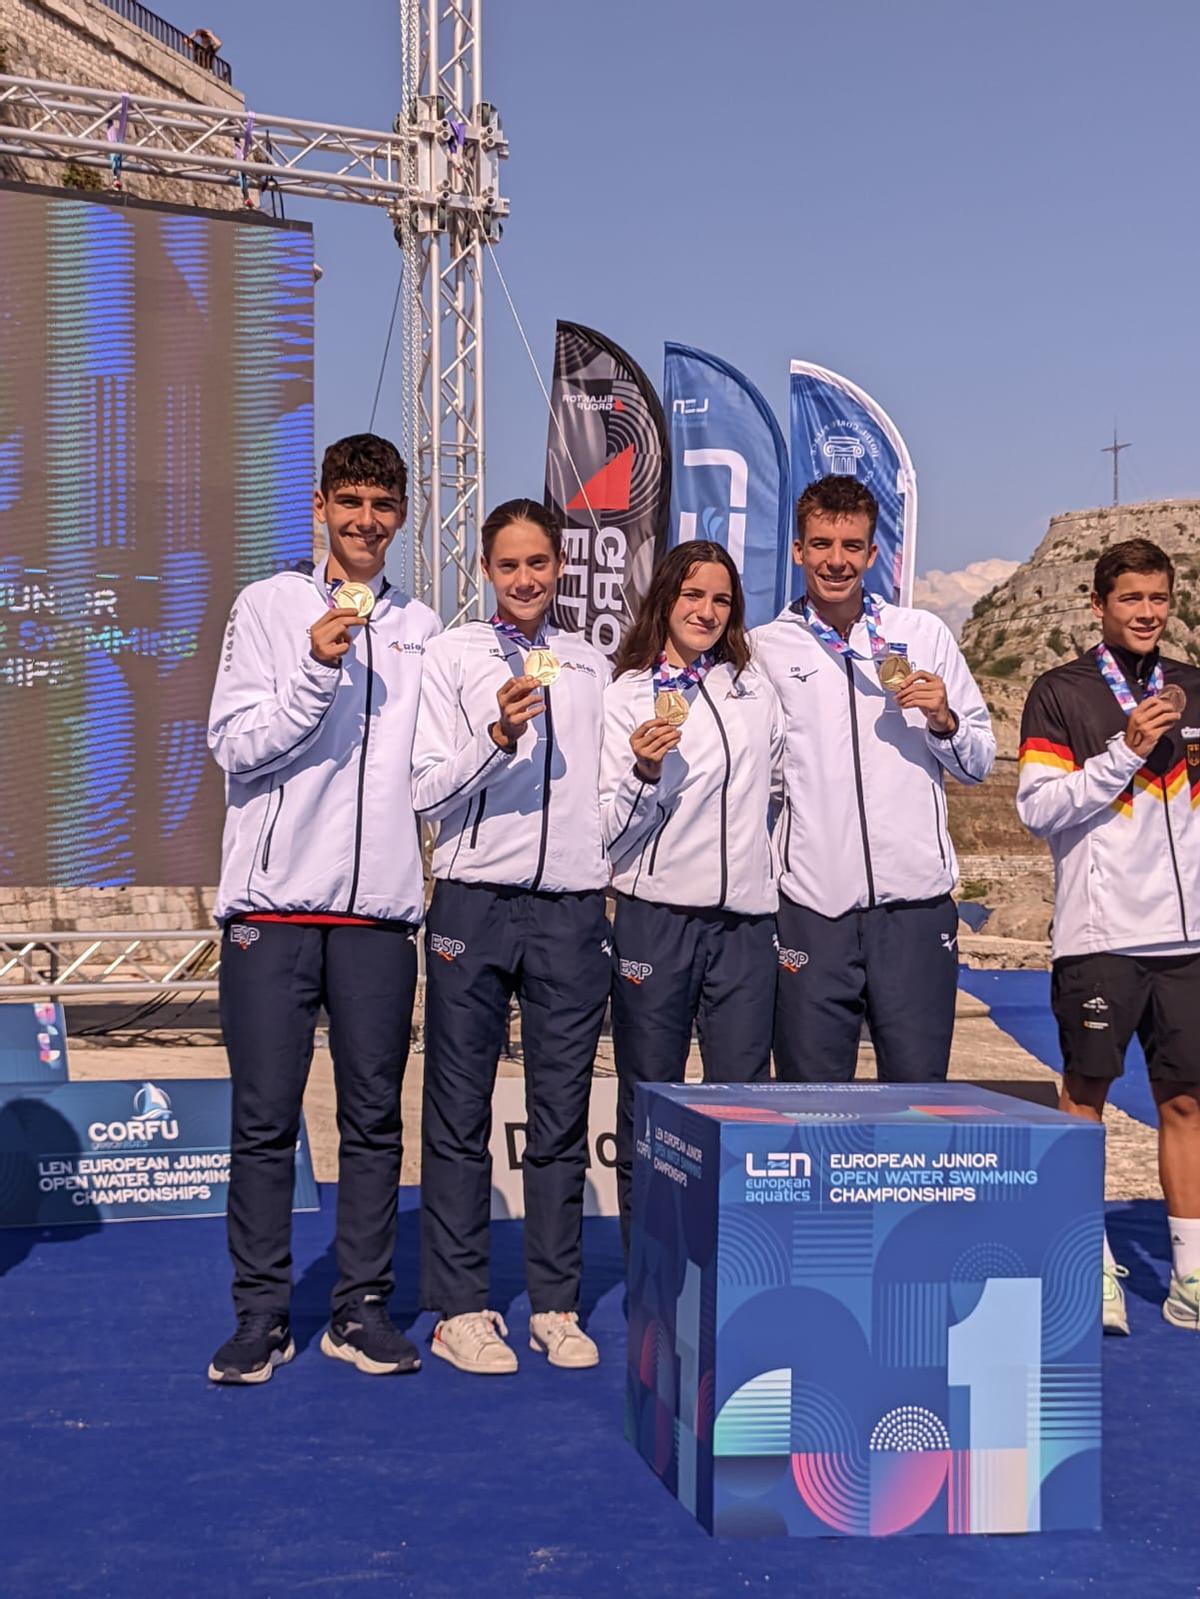 El oro en el relevo mixto español (14-16 años), con Noa Martín en la posta y Pablo Martínez en la última, fue un perfecto cierre a la competición.